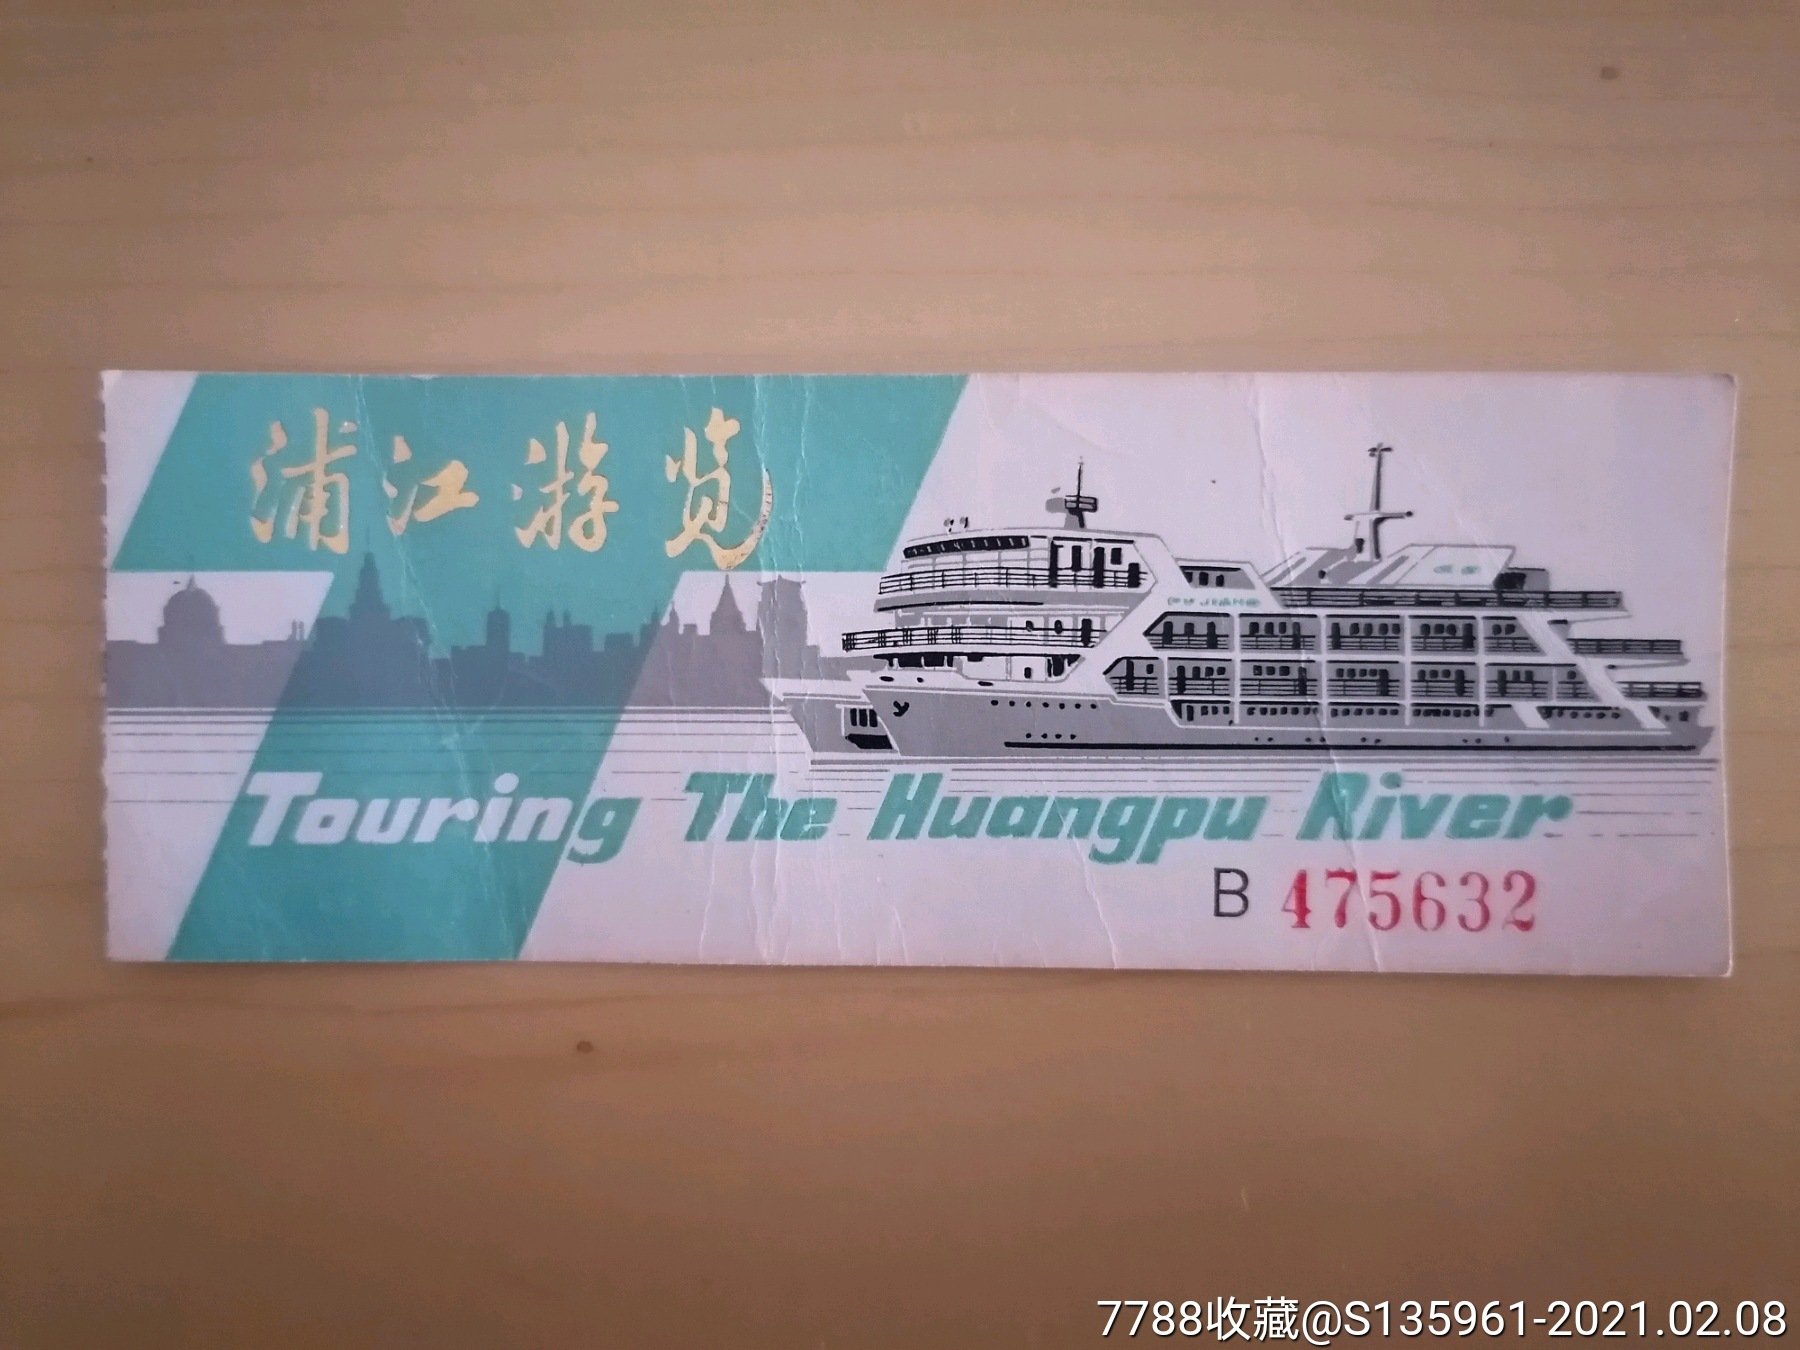 上海浦江游览门票图片